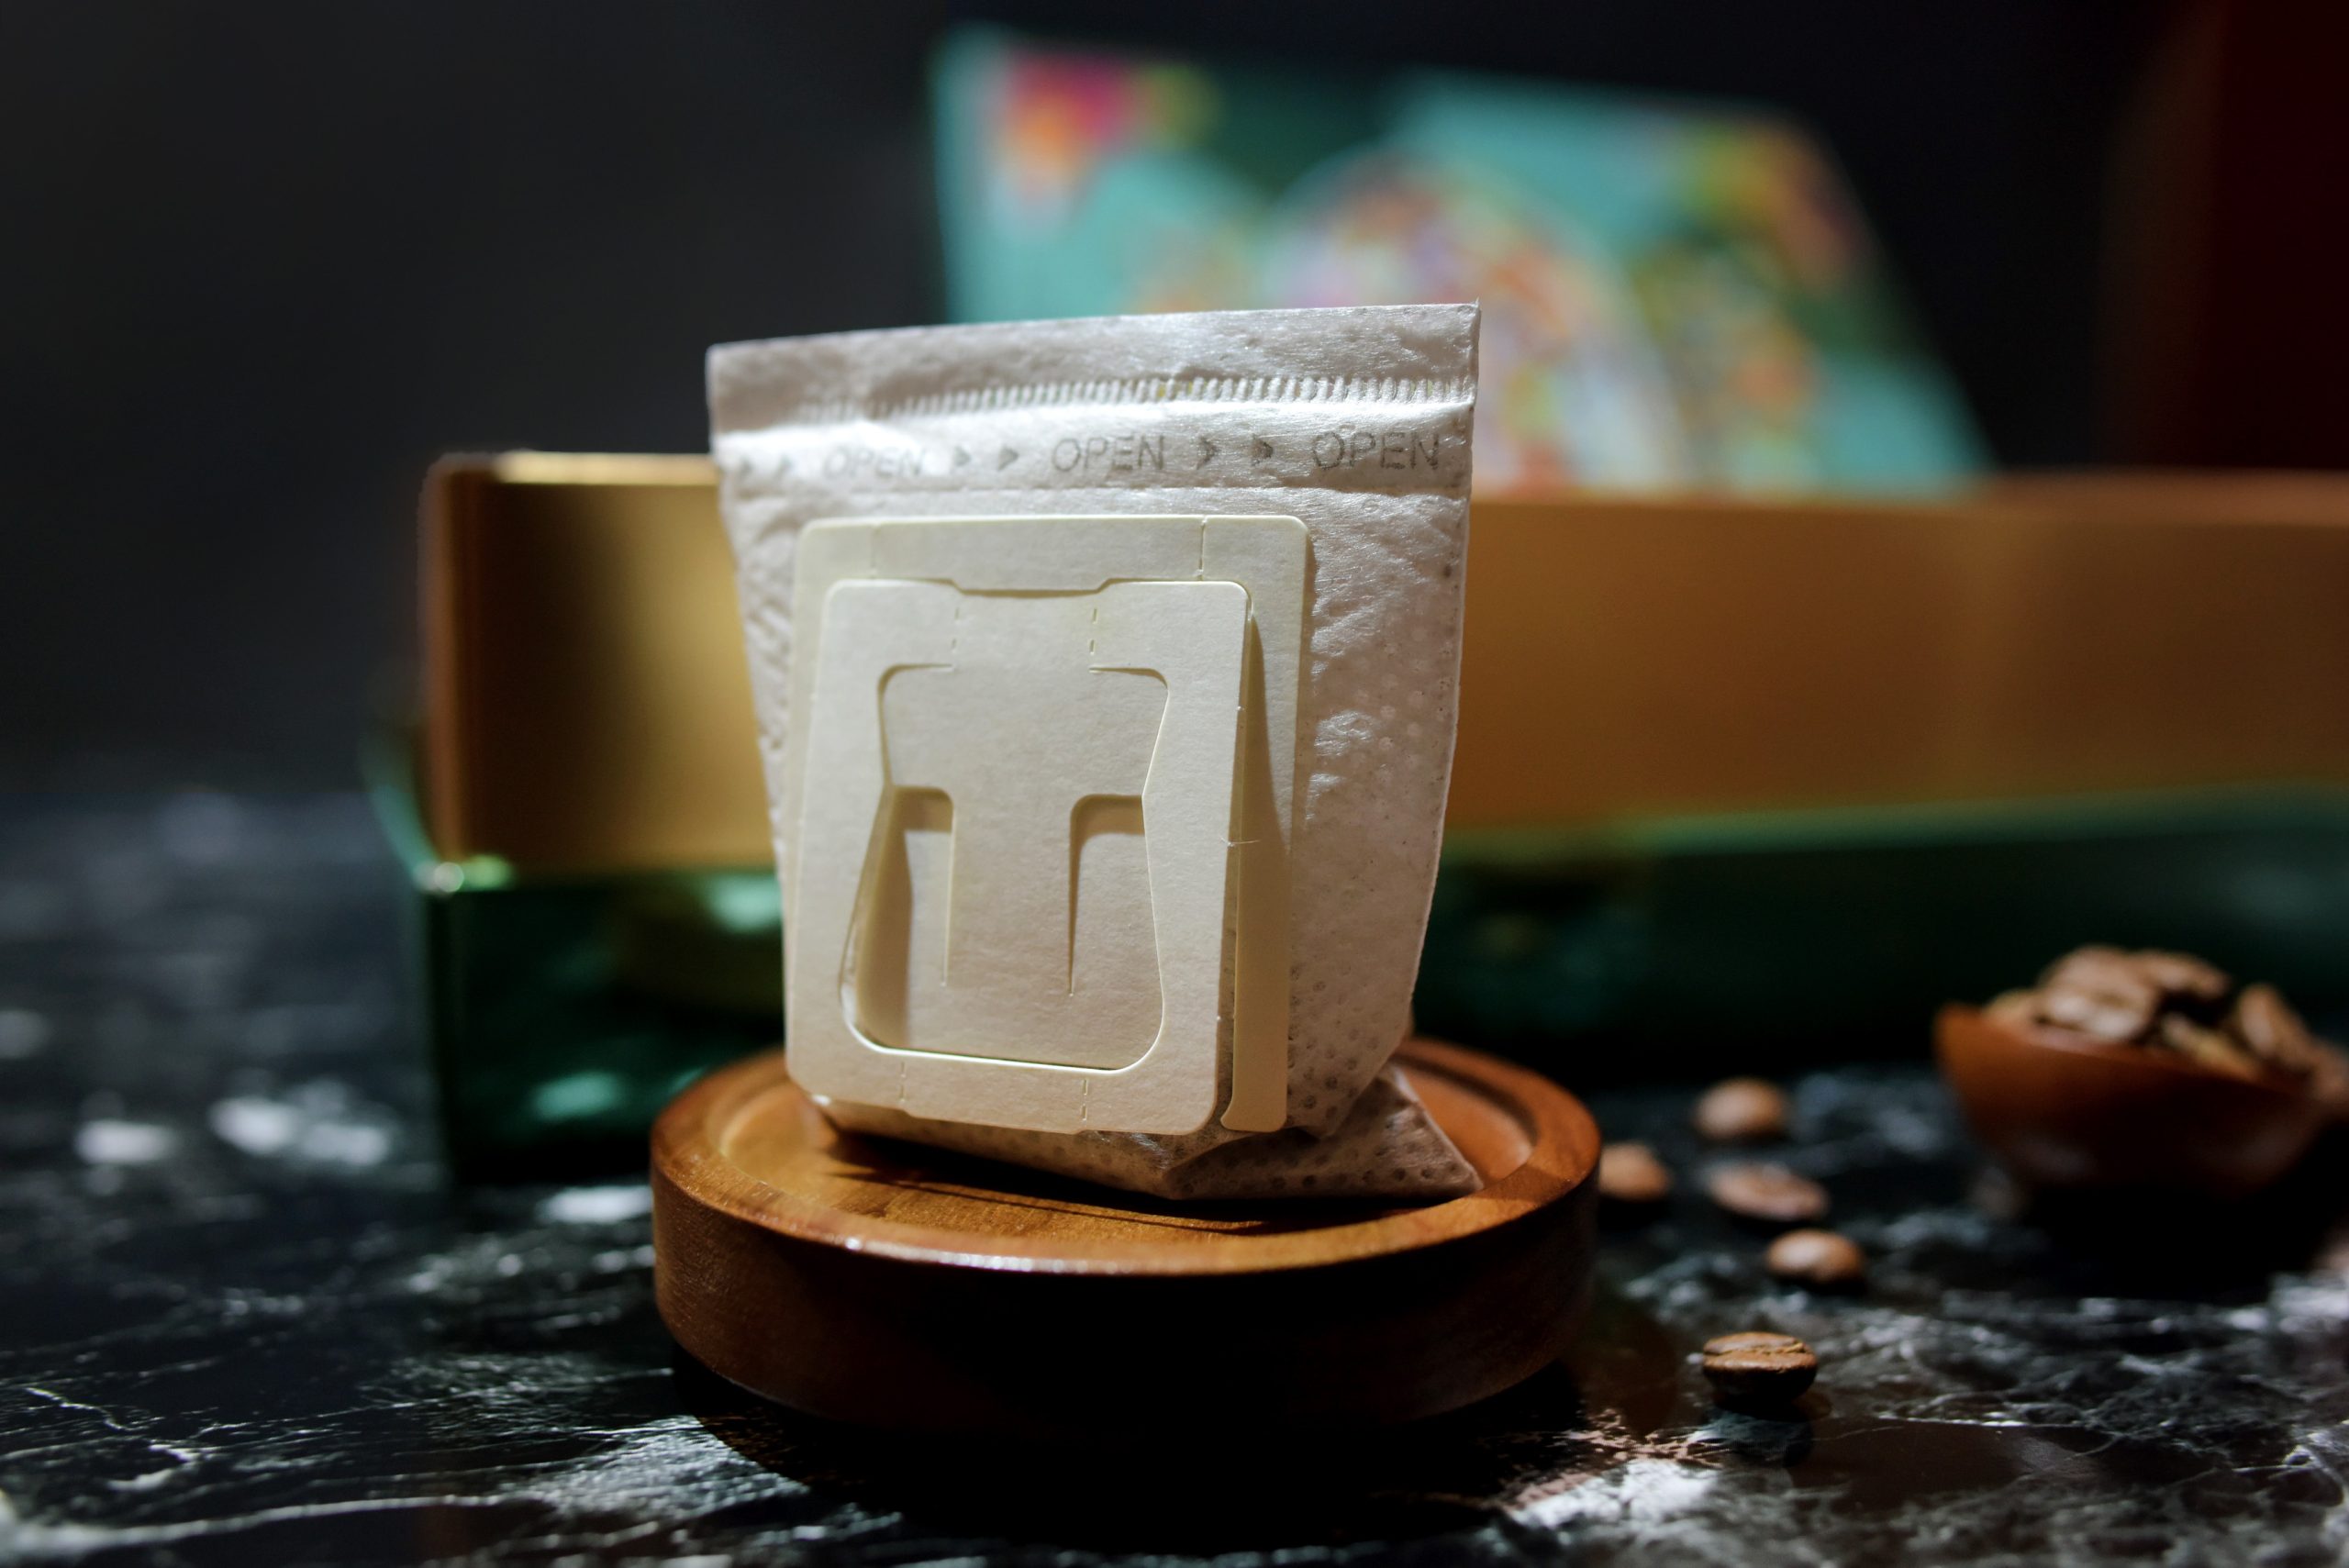 歐客佬 咖啡 2023中秋禮盒 掛耳專用杯 手沖壺 藝伎盛宴 Oklao Coffee 2023 Mid-Autumn Festival Gift Box Special Cup for Hanging Ears Hand Pour Pot Geisha Feast